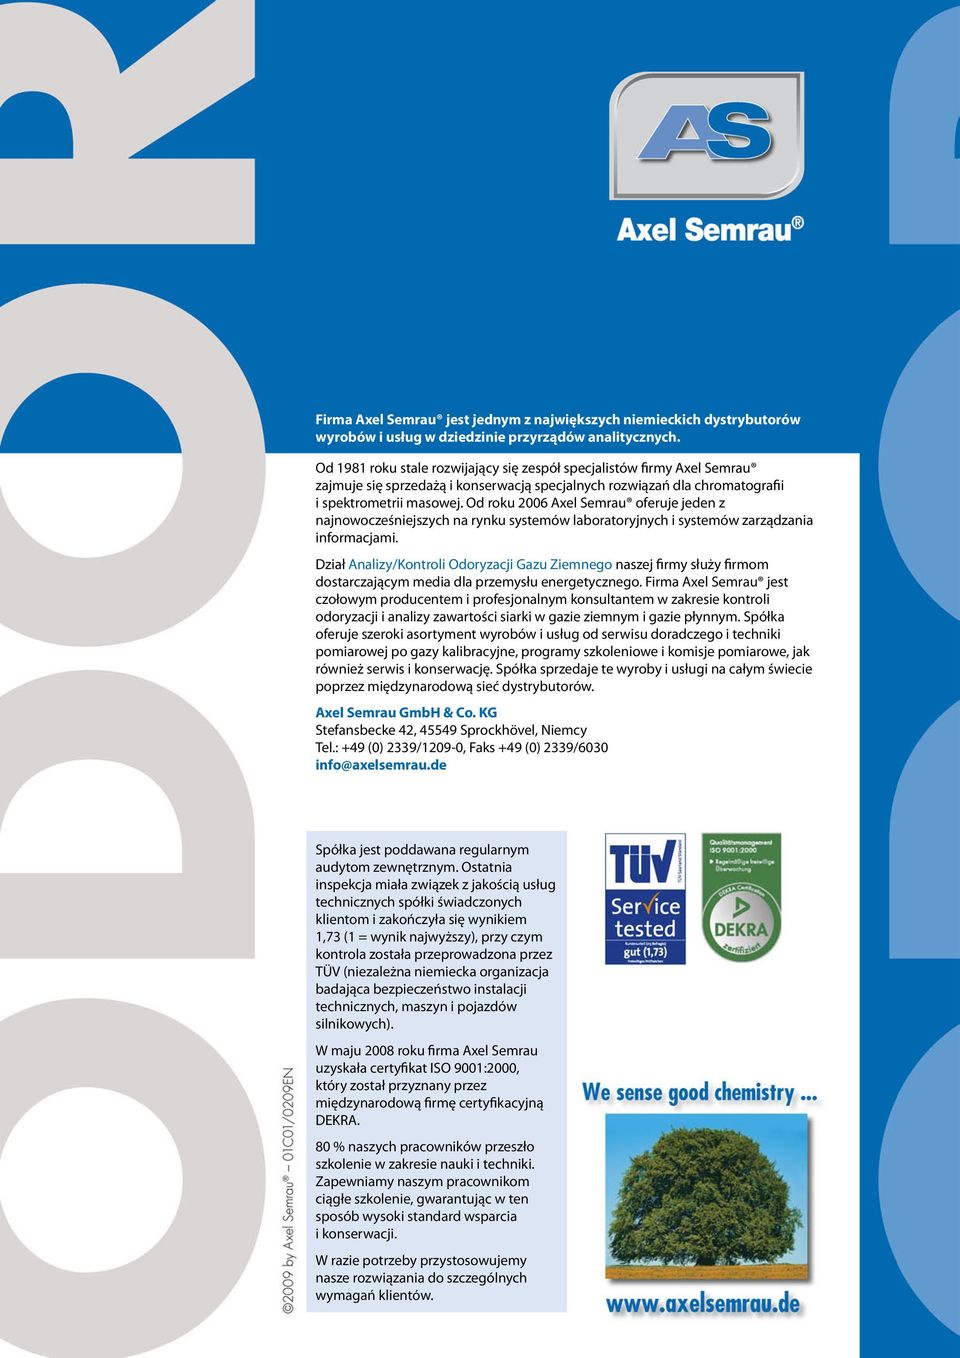 Od roku 2006 Axel Semrau oferuje jeden z najnowocześniejszych na rynku systemów laboratoryjnych i systemów zarządzania informacjami.